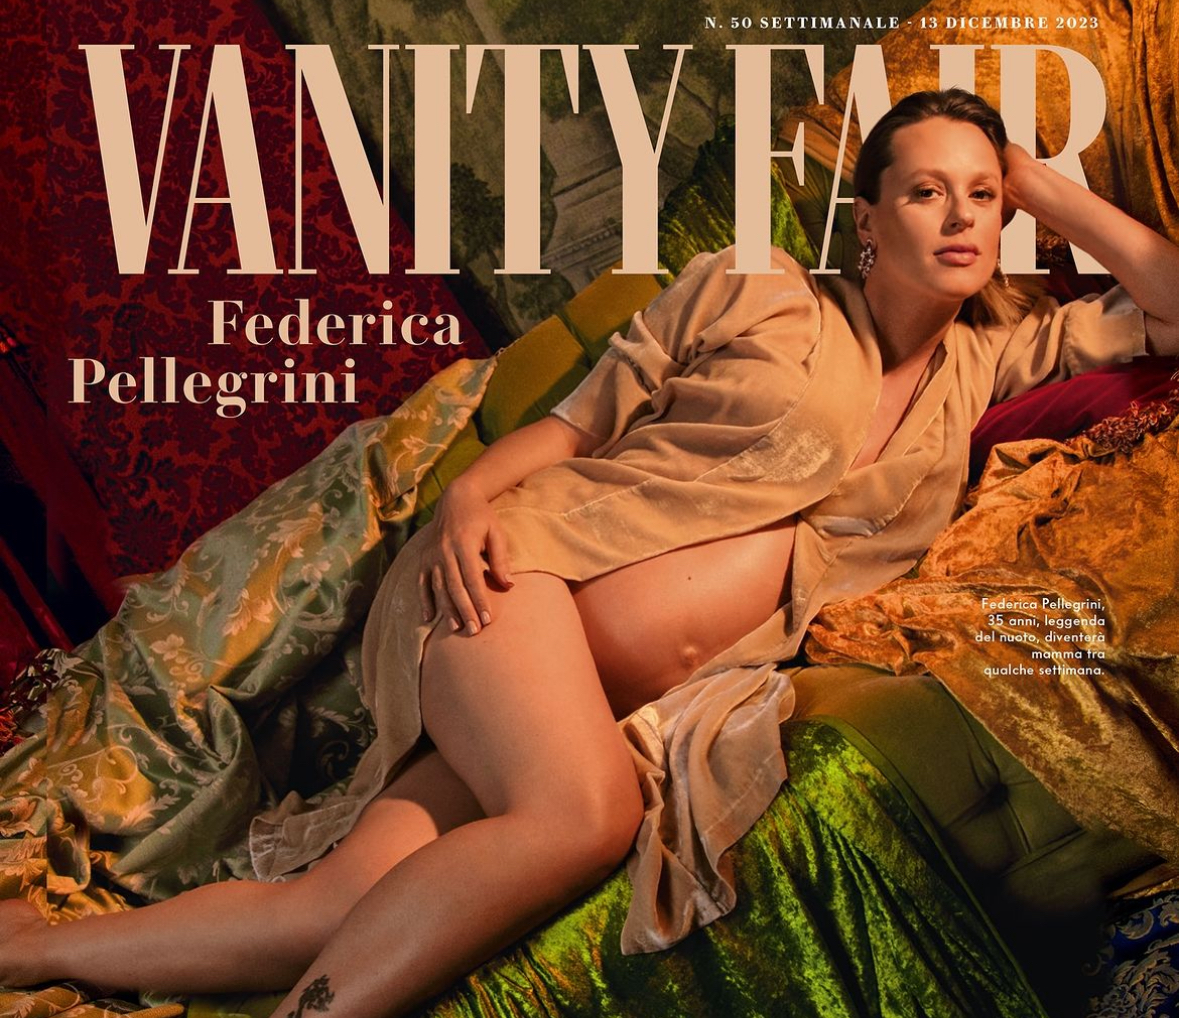 Federica Pellegrini sulla cover di Vanity Fair